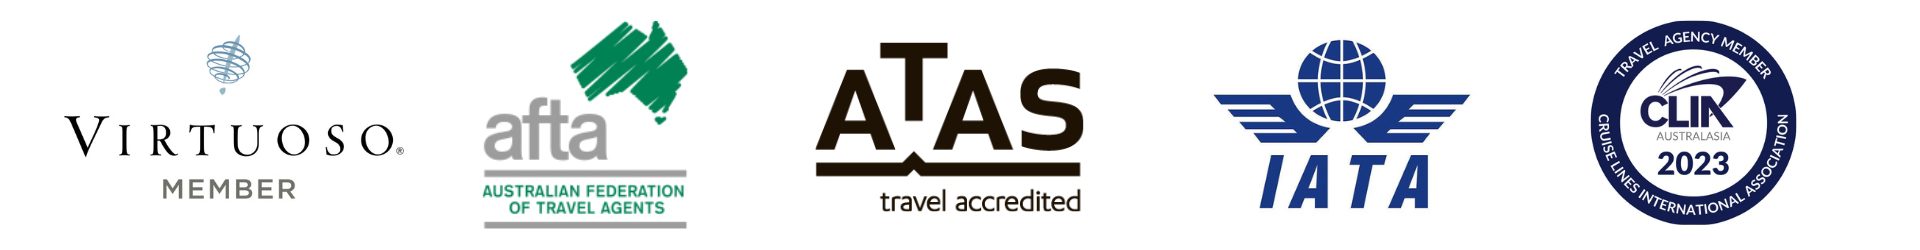 MTA – Mobile Travel Agents Australia